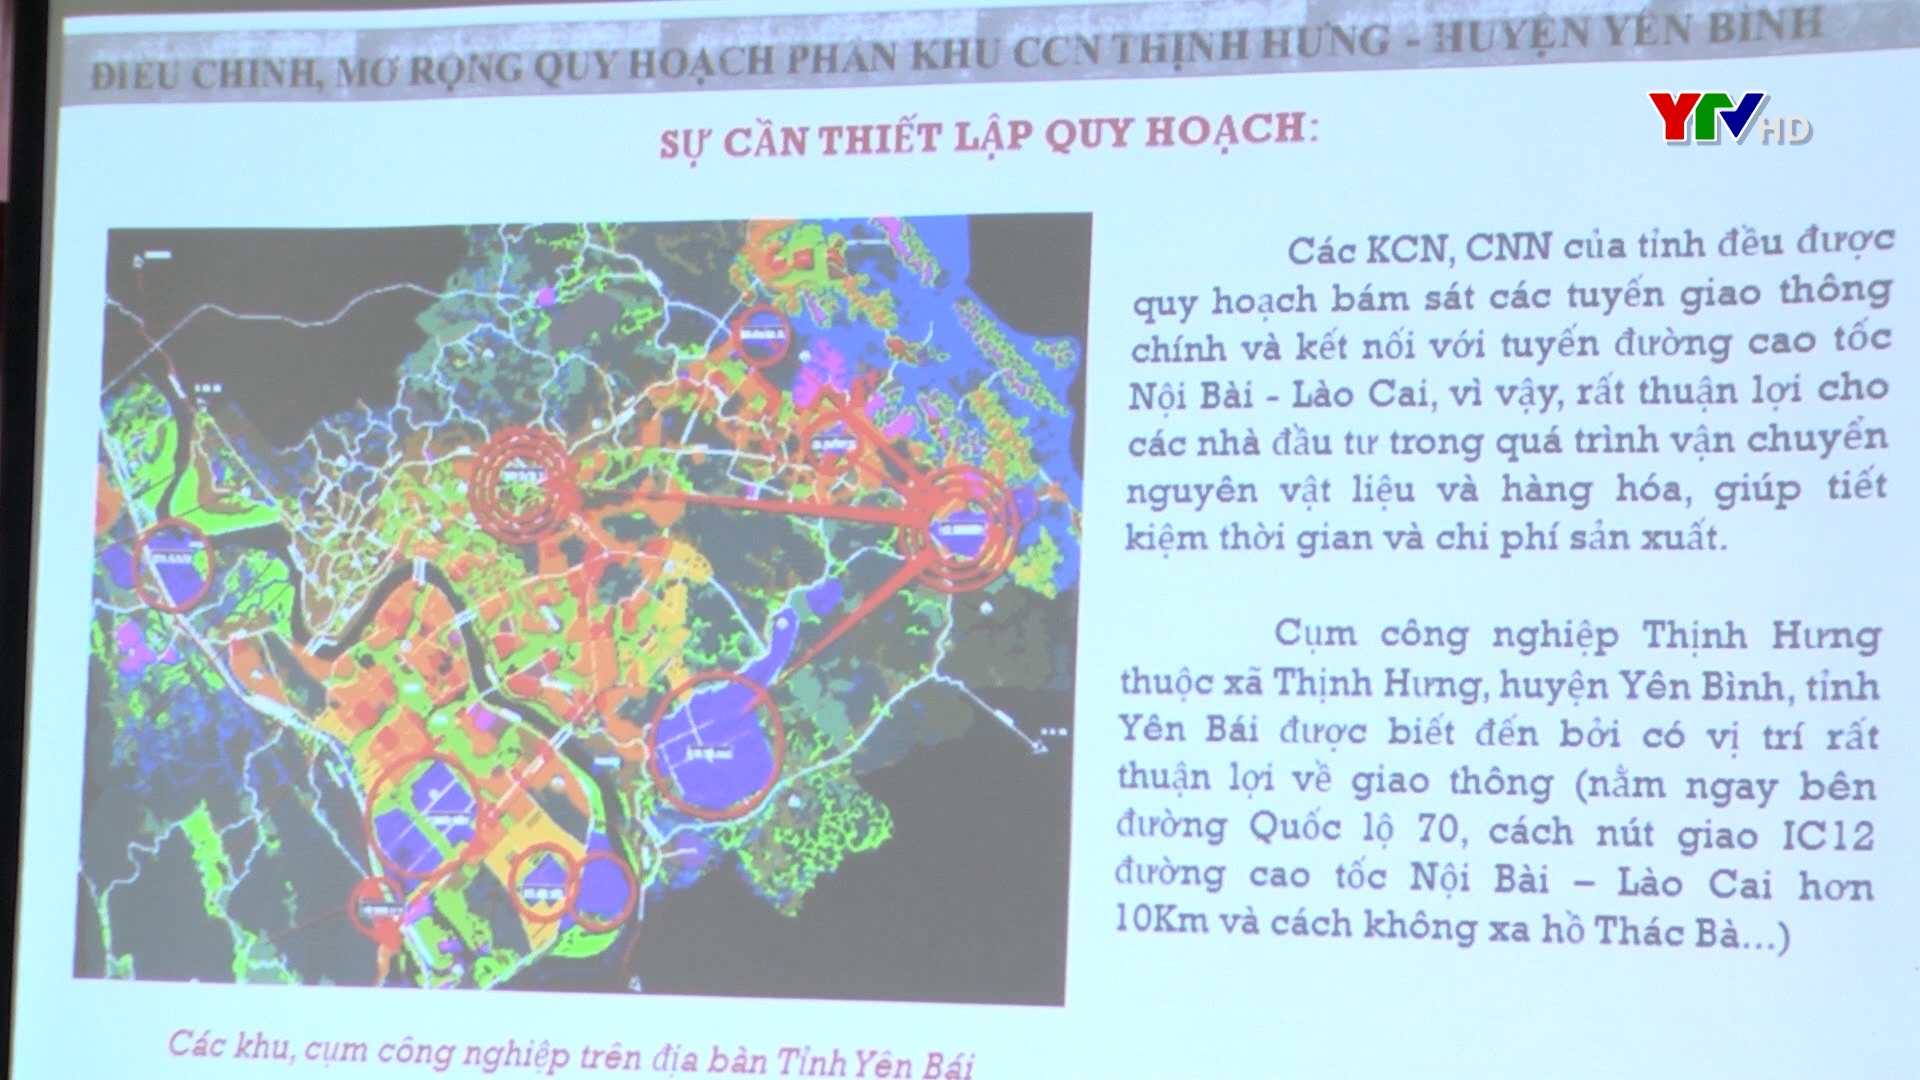 Huyện Yên Bình công bố Đồ án điều chỉnh, mở rộng quy hoạch phân khu cụm công nghiệp Thịnh Hưng